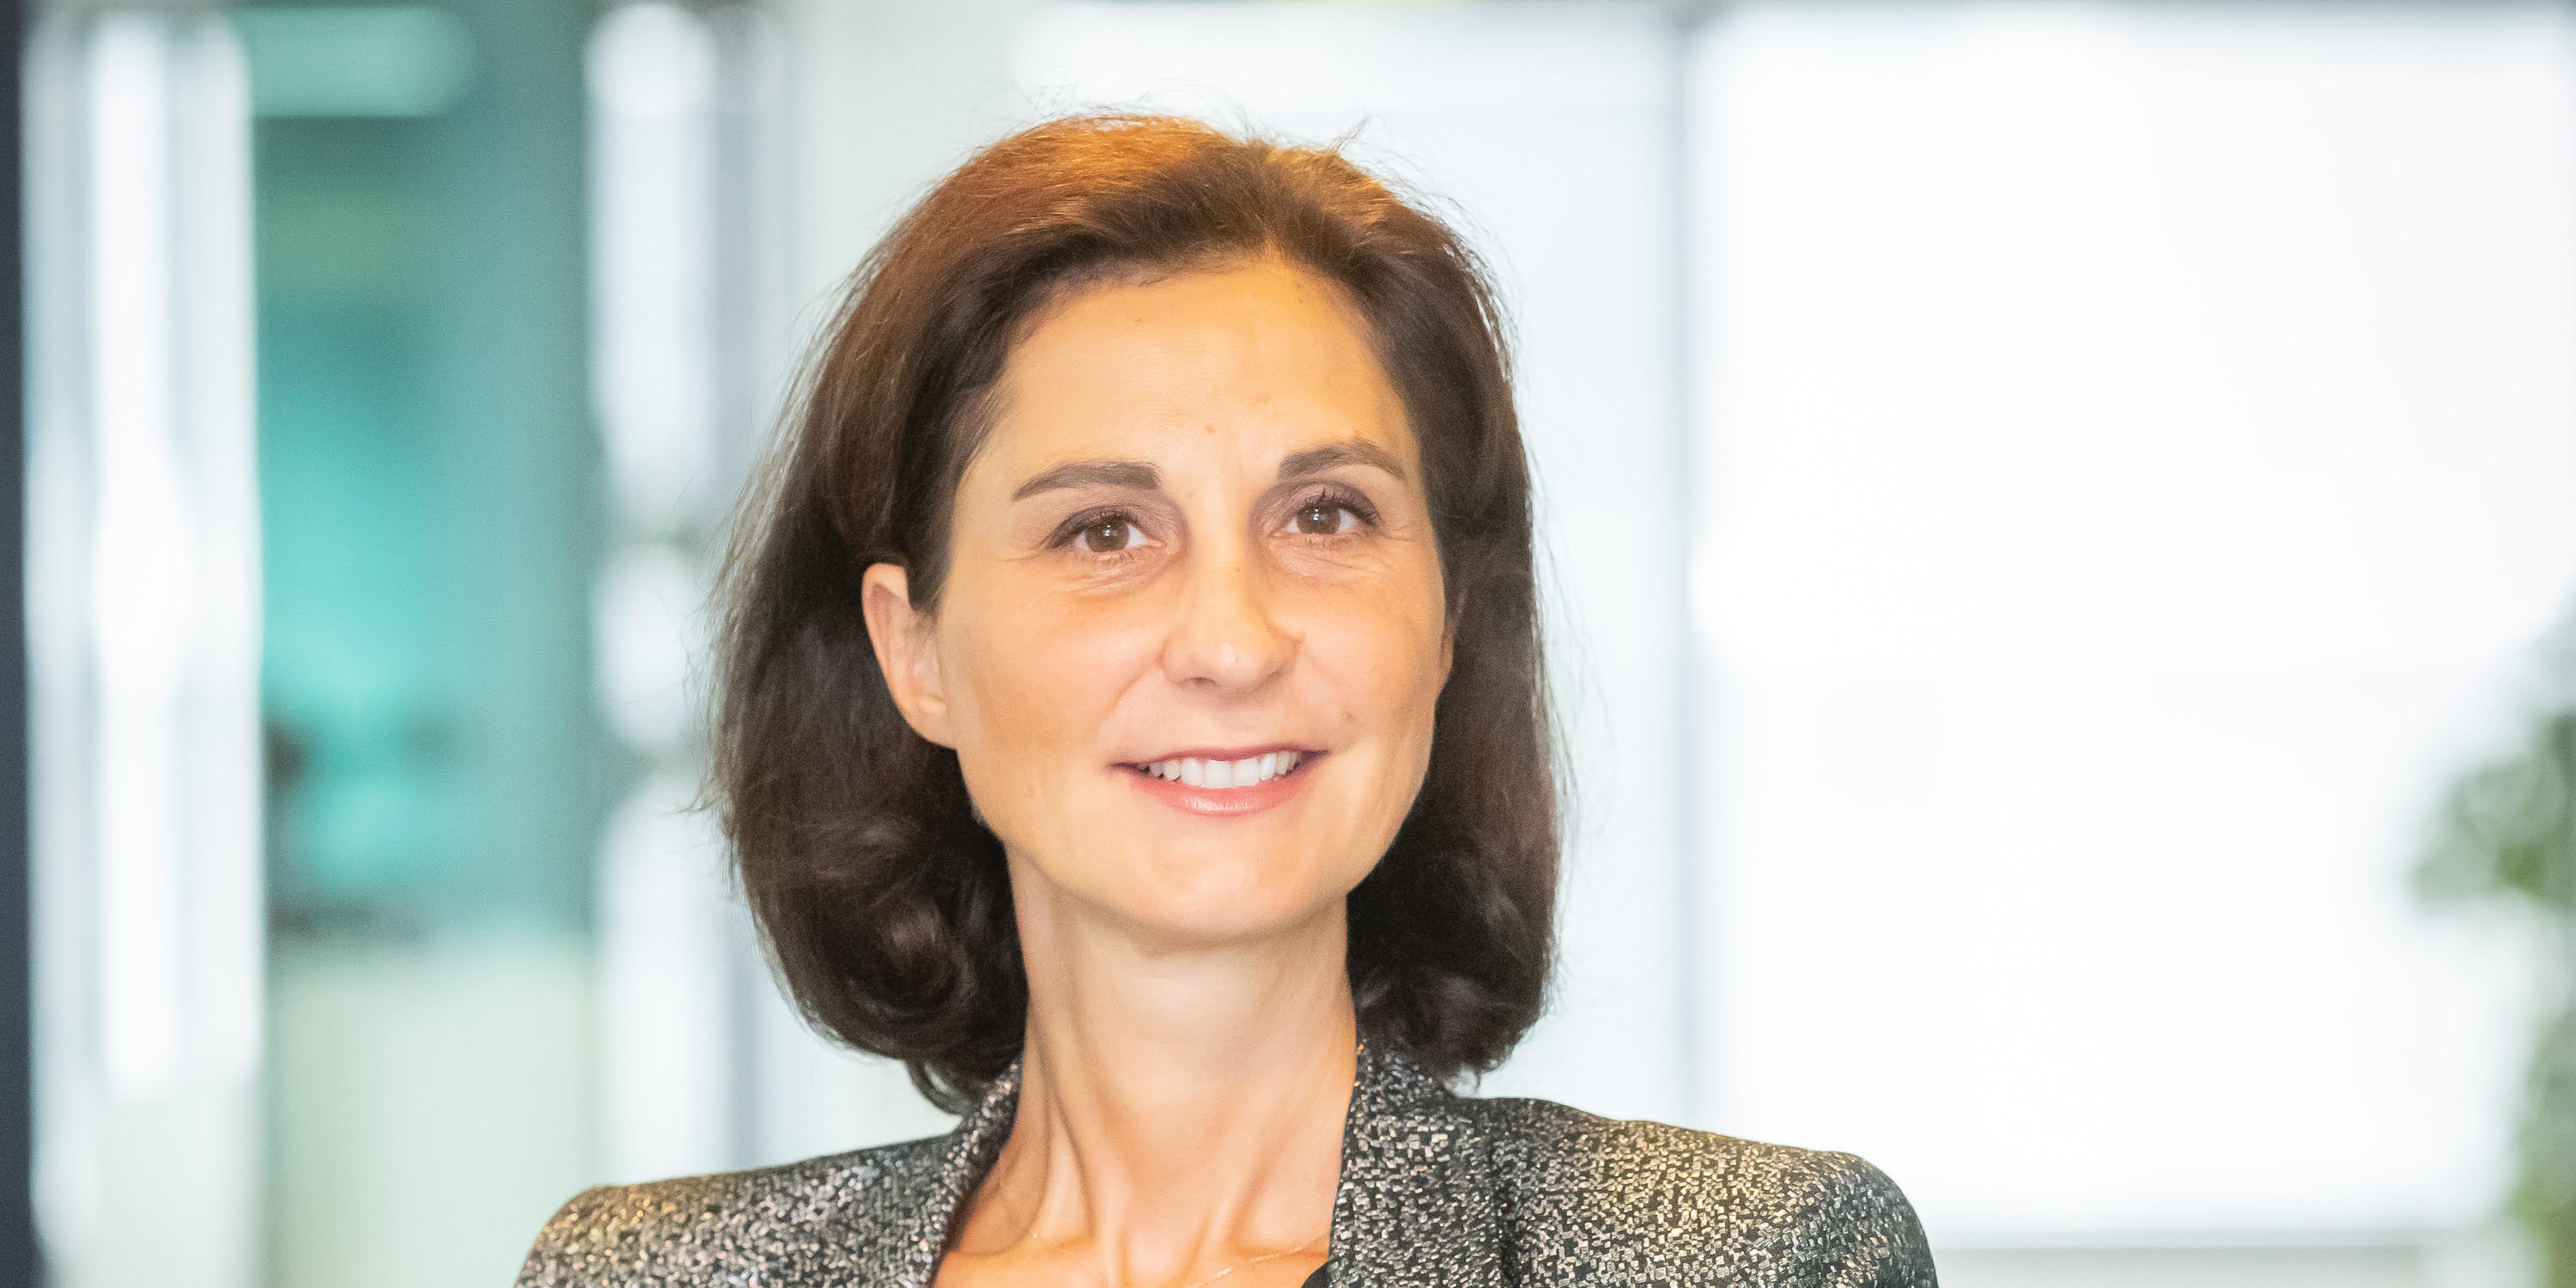 Parité femmes-hommes : Judith Jiguet, présidente d'ISS France, s'engage